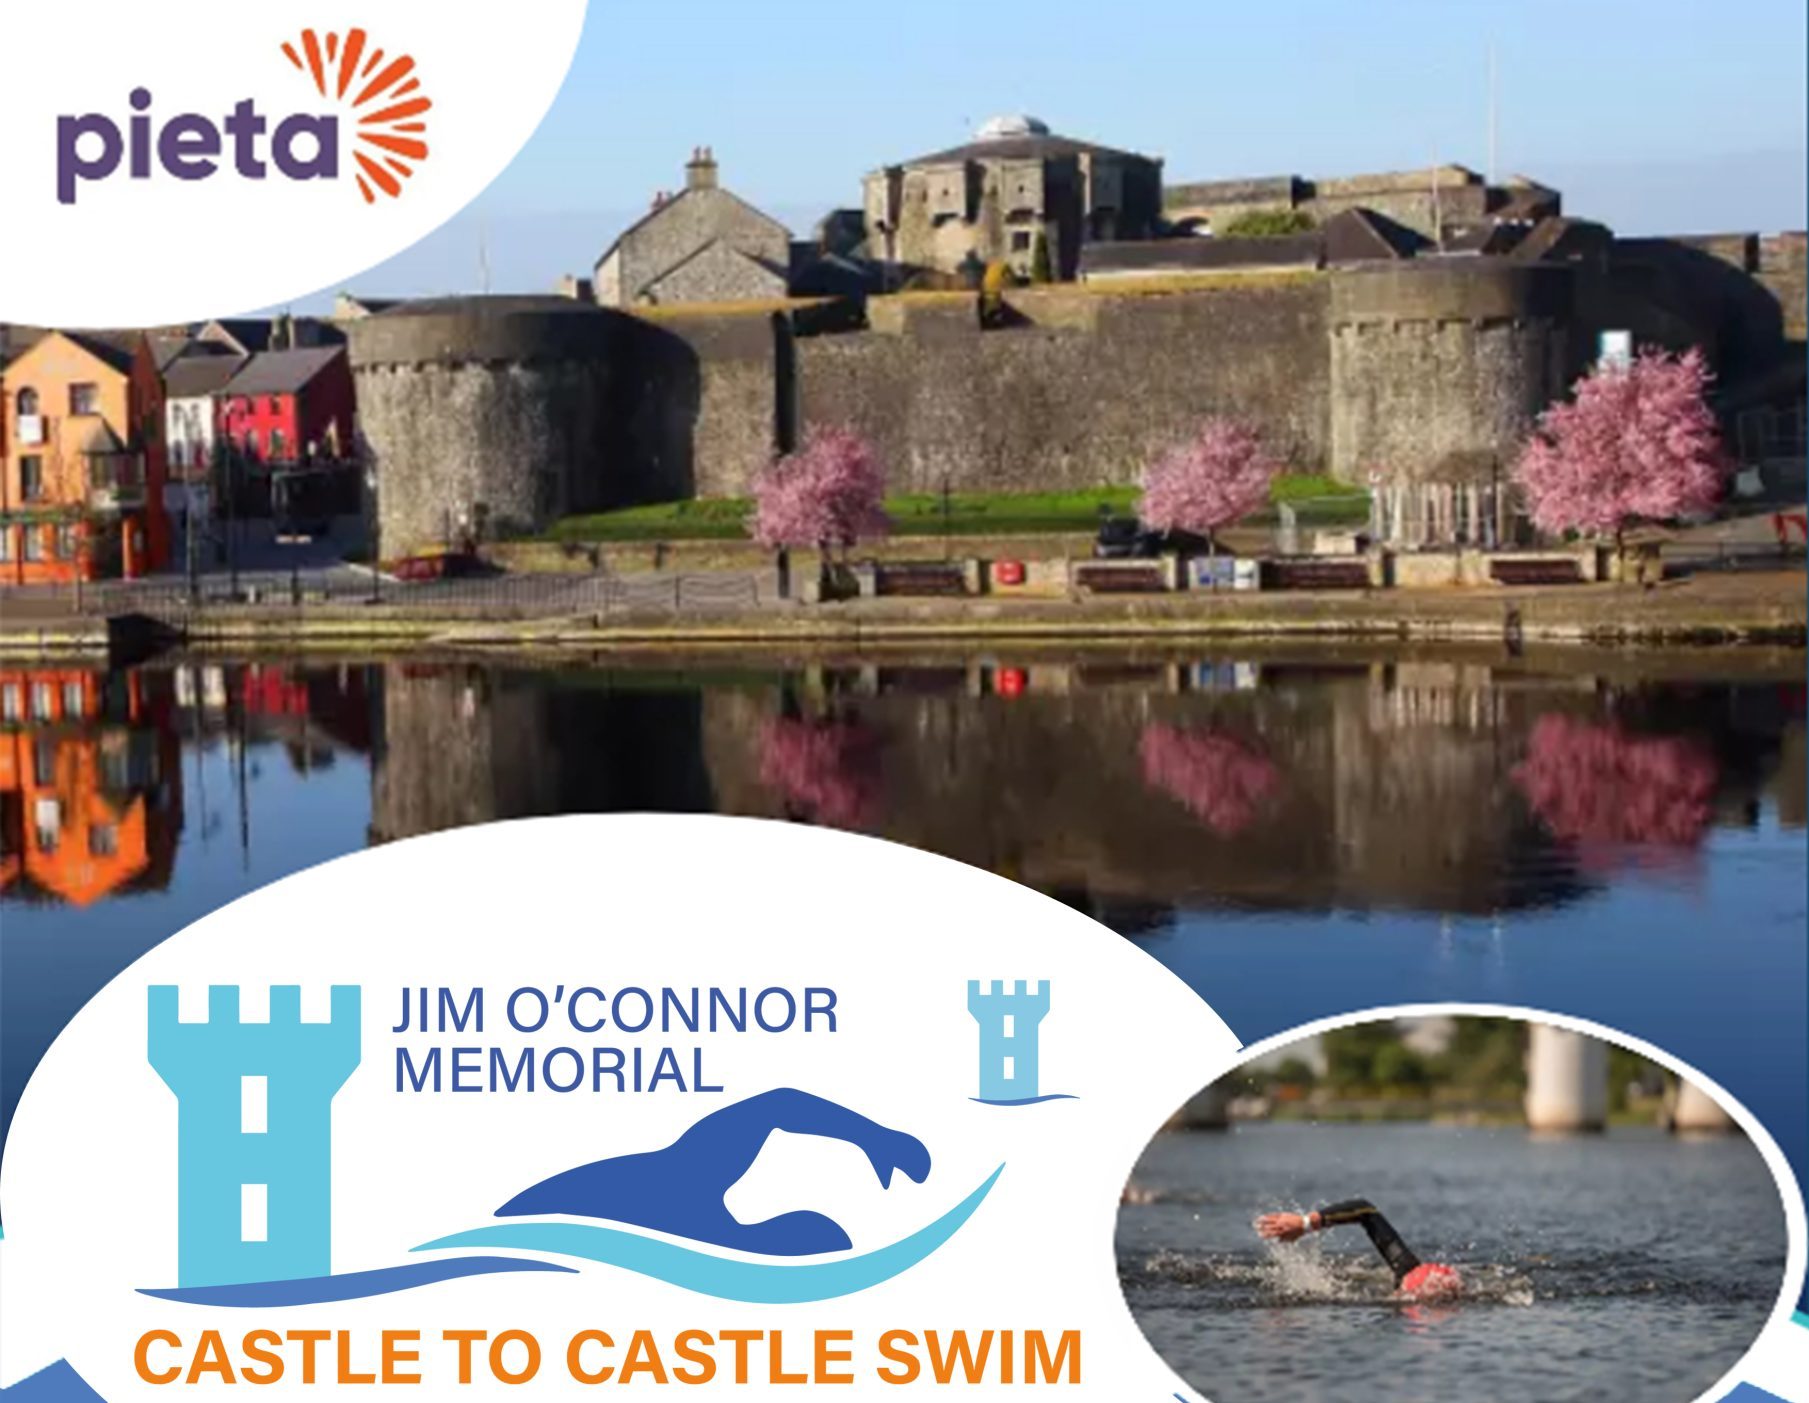 Jim O’Connor Memorial Castle to Castle Swim